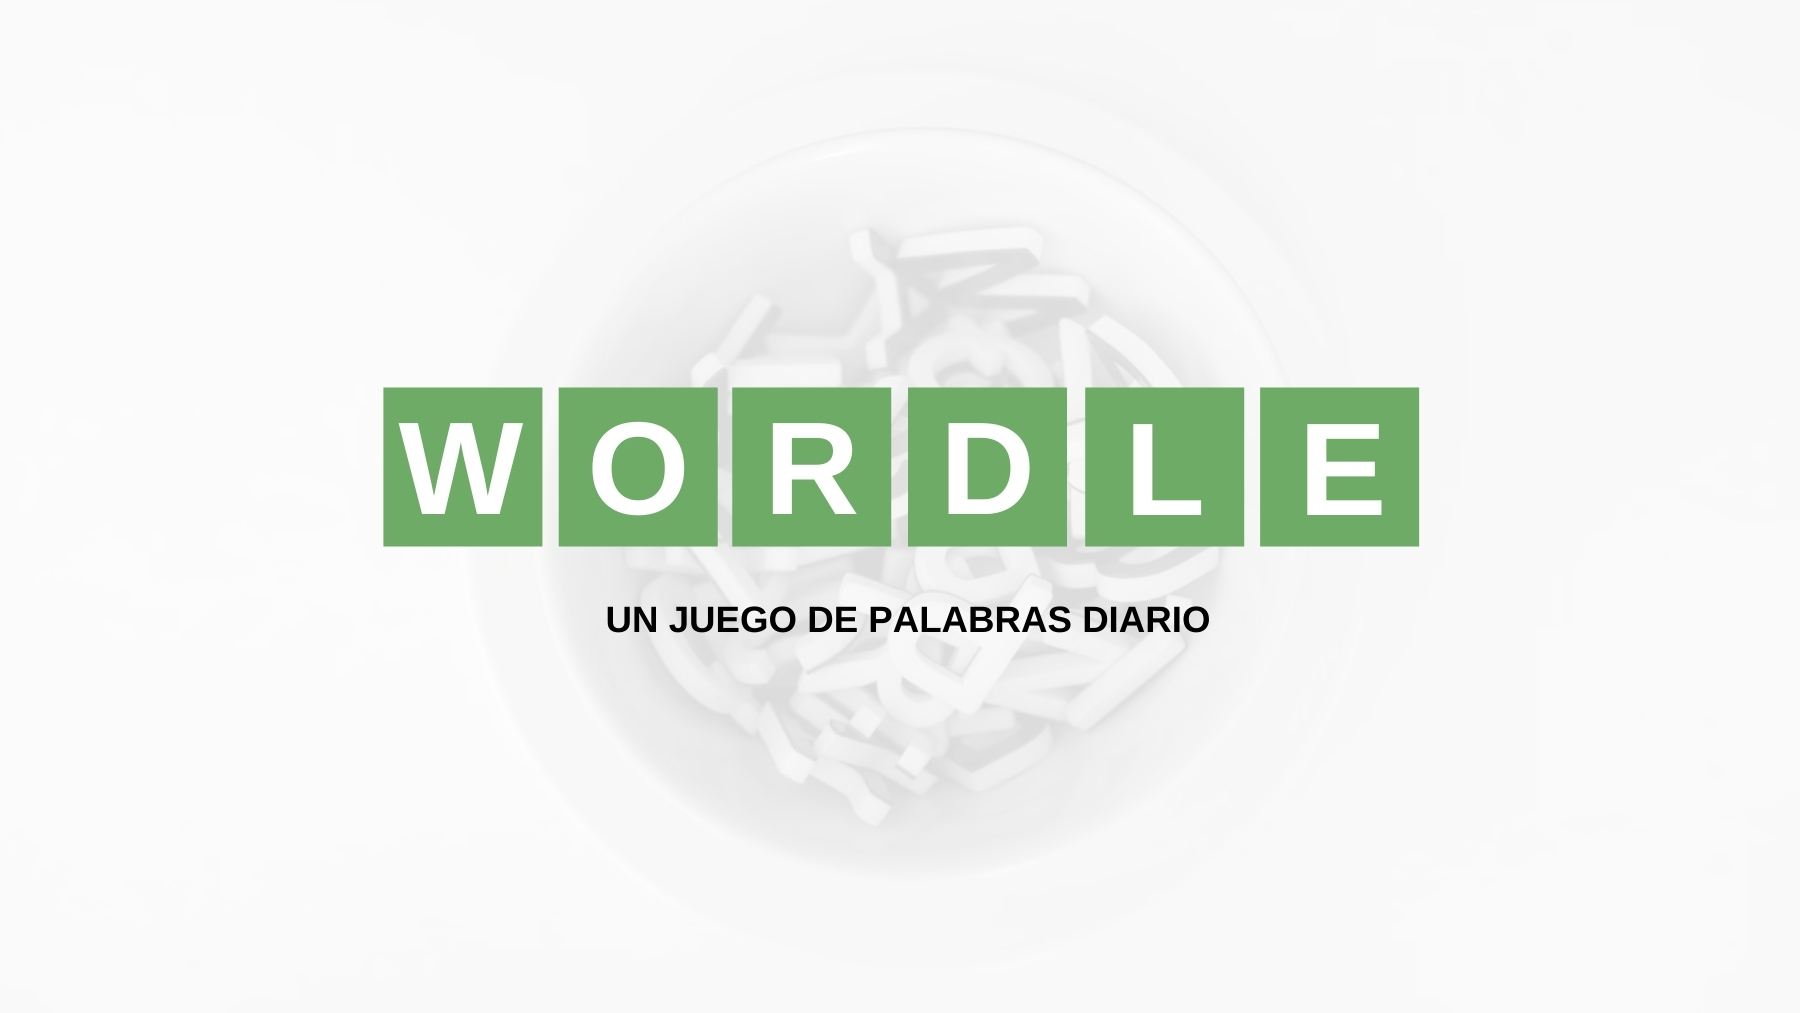 Solución reto Wordle español, científico y con tildes hoy, lunes 23 de mayo de 2022